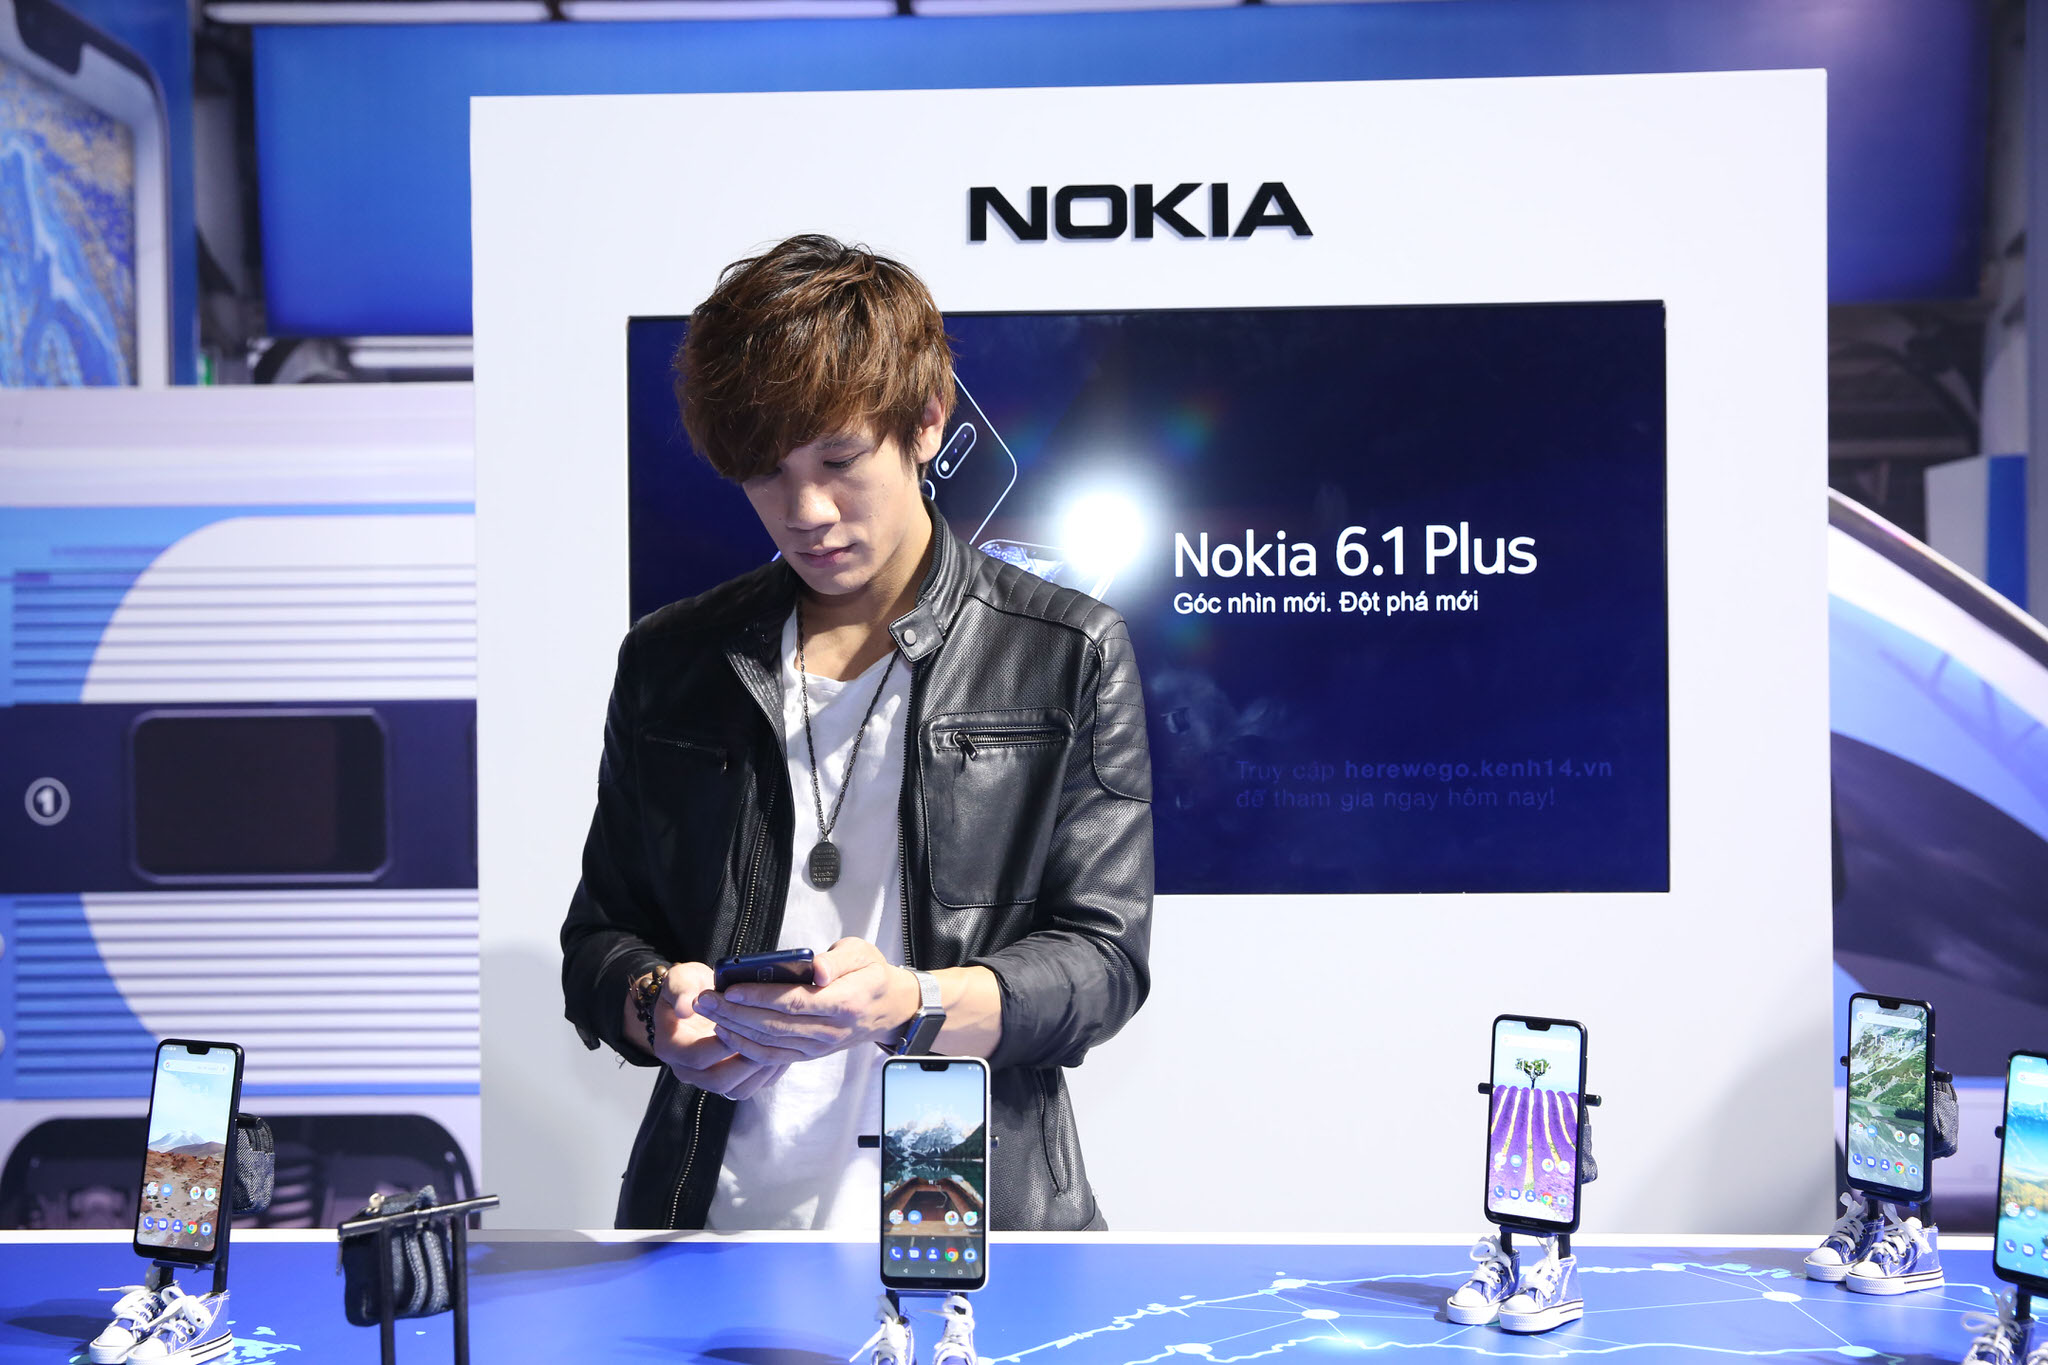 Đã có cập nhật Android 9 Pie cho Nokia 6.1 Plus và Nokia 6.1